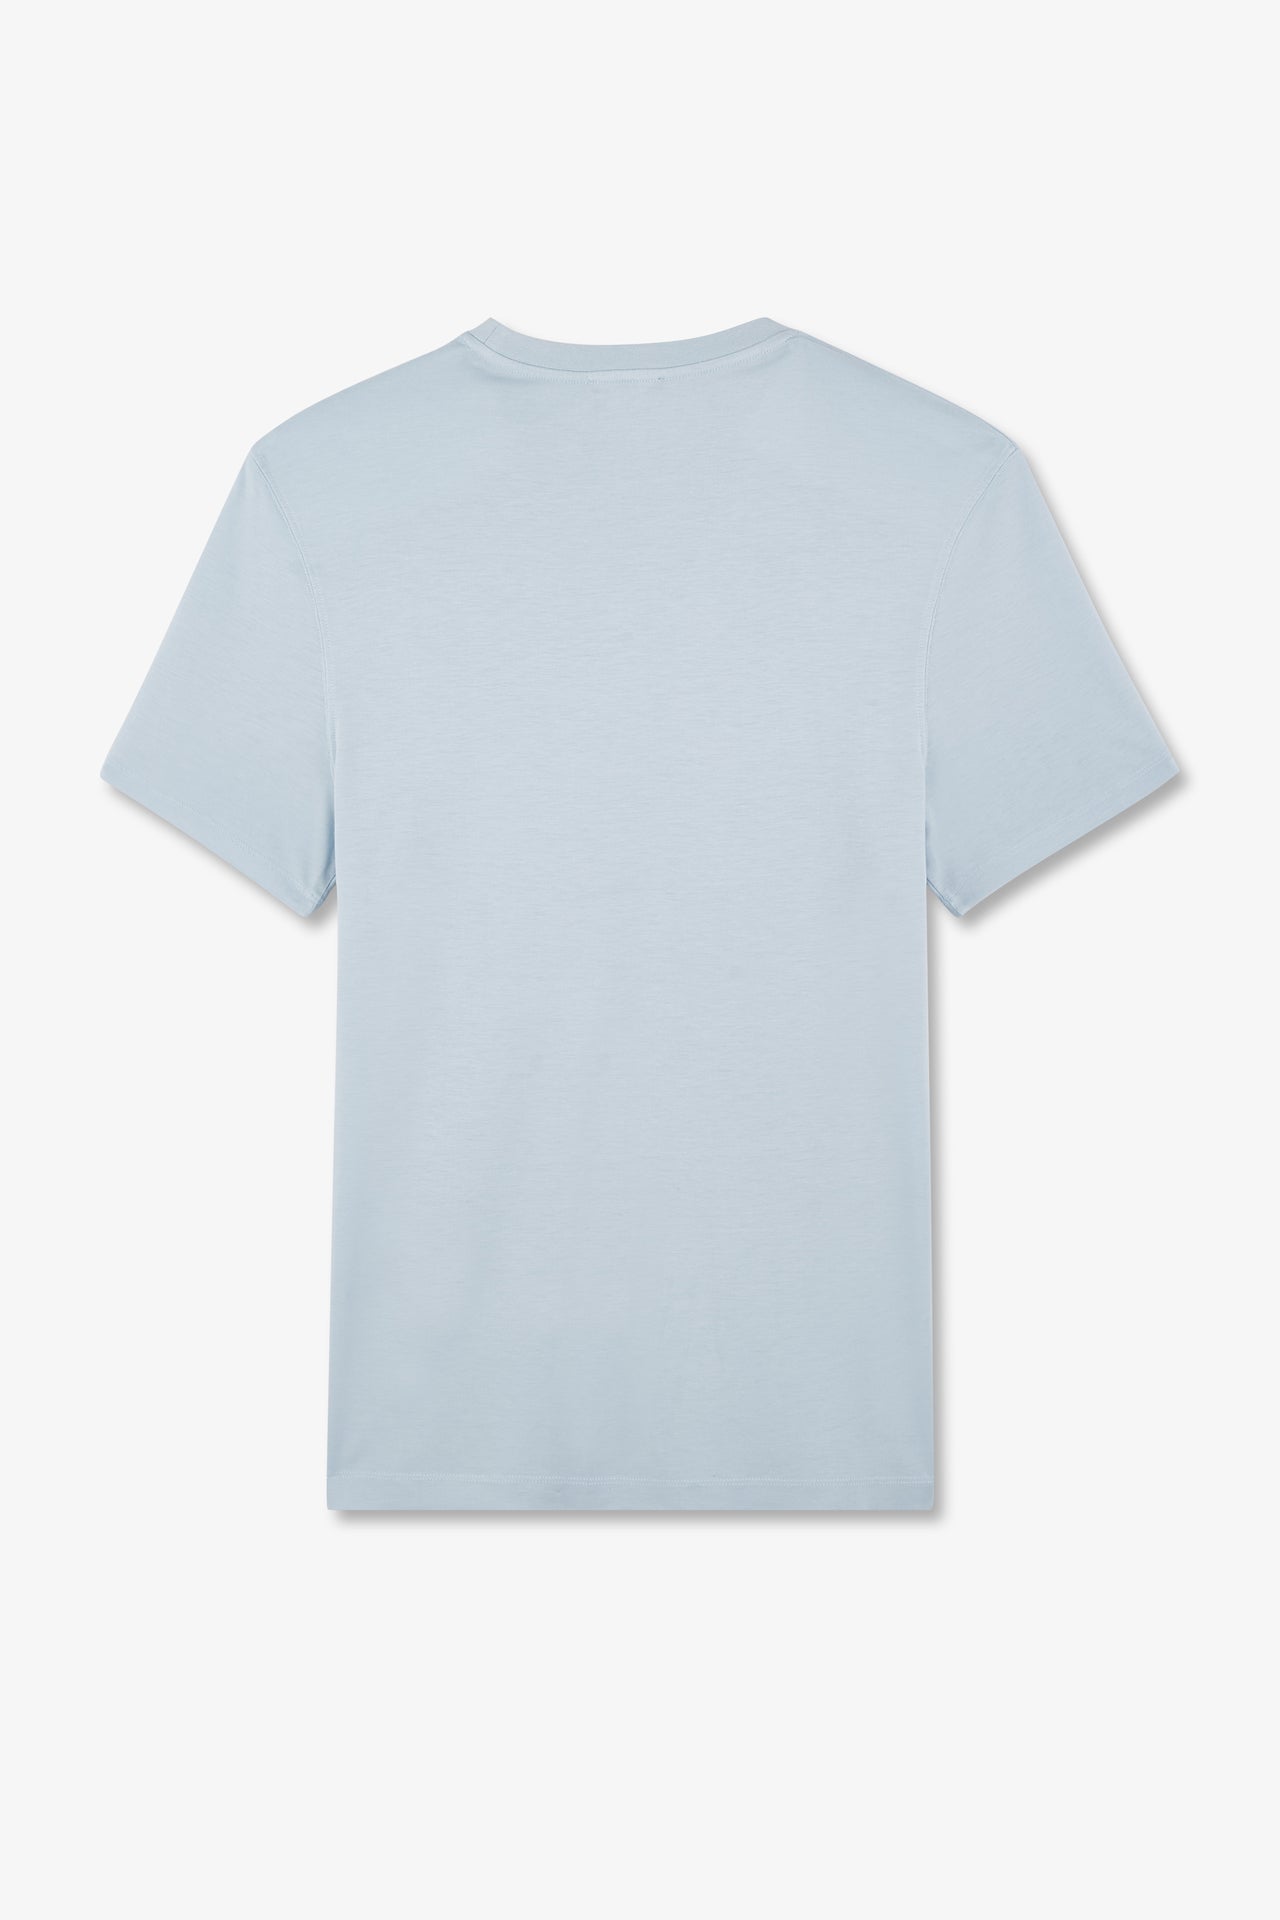 T-shirt bleu ciel à manches courtes - Image 5